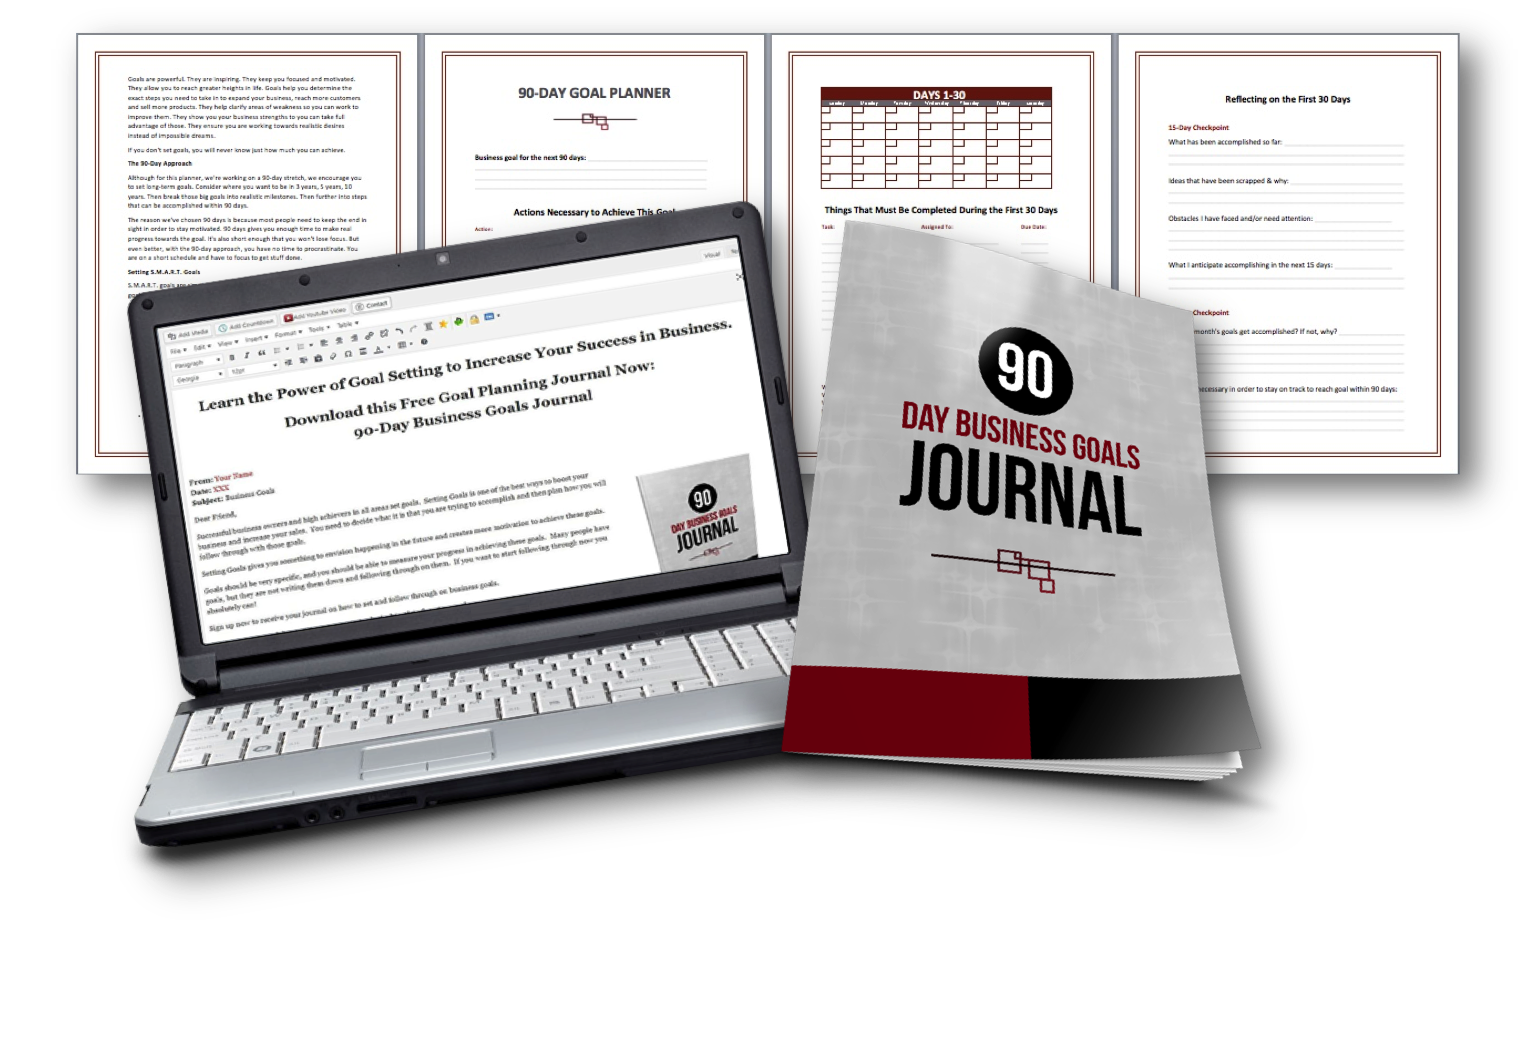 90-Days Business Goals Journal